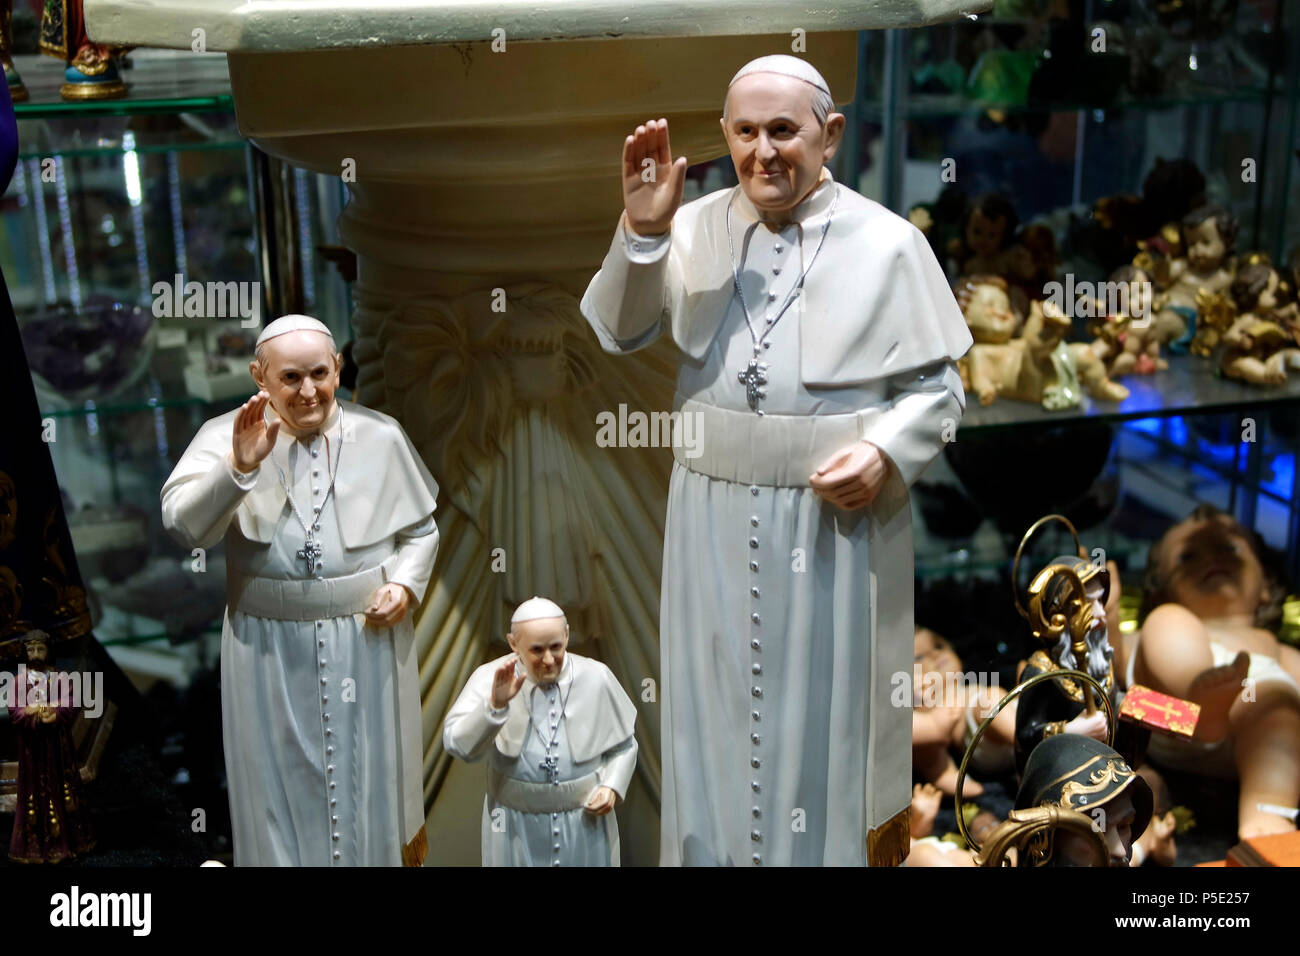 eine Figur, die Papst Franziskus darstellen soll, Madrid. Stock Photo